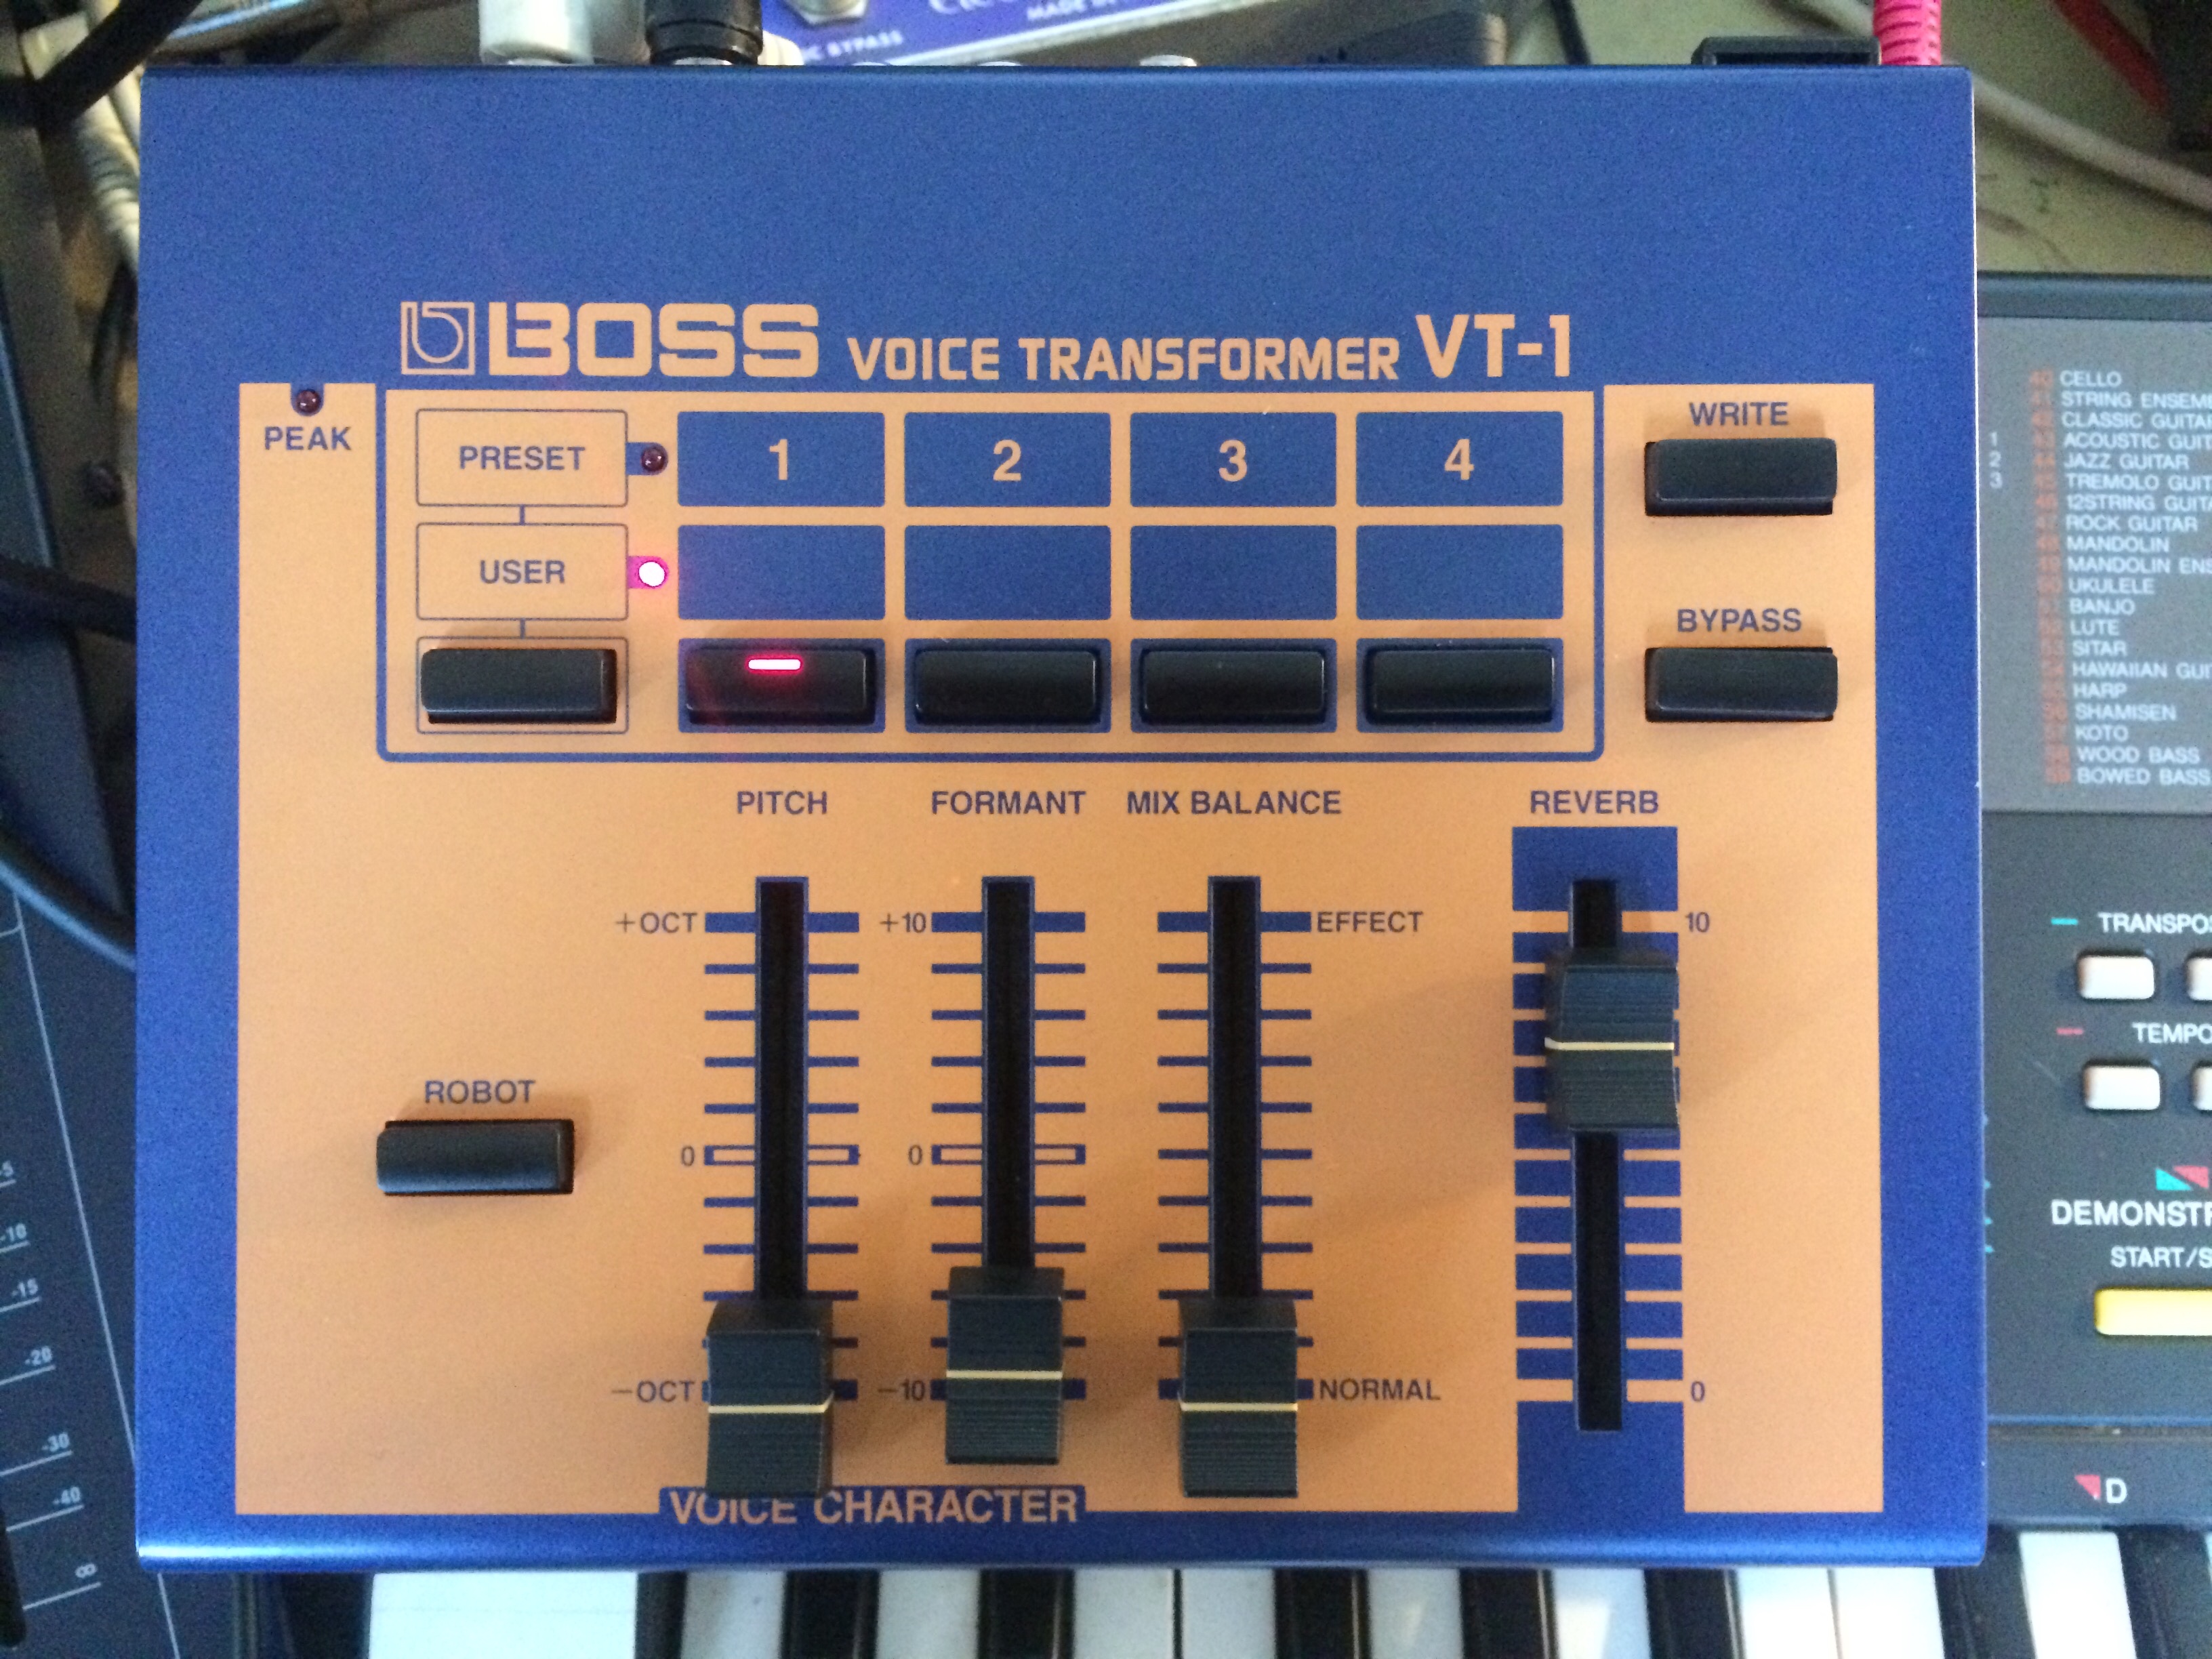 VT-1 Voice Transformer - Boss VT-1 Voice Transformer - Audiofanzine